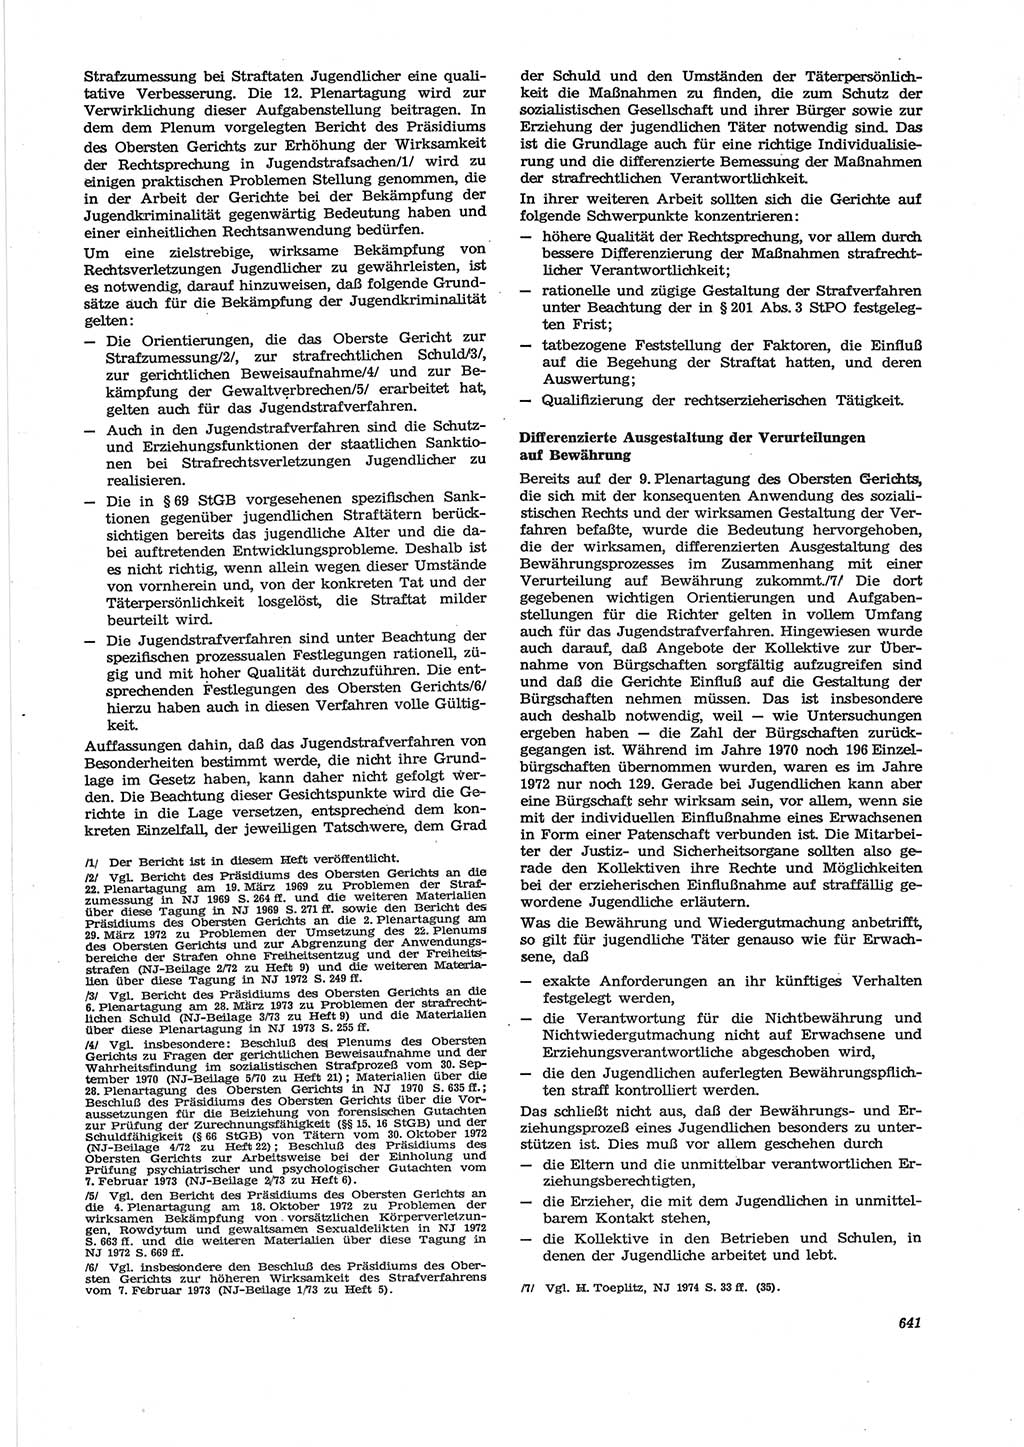 Neue Justiz (NJ), Zeitschrift für Recht und Rechtswissenschaft [Deutsche Demokratische Republik (DDR)], 28. Jahrgang 1974, Seite 641 (NJ DDR 1974, S. 641)